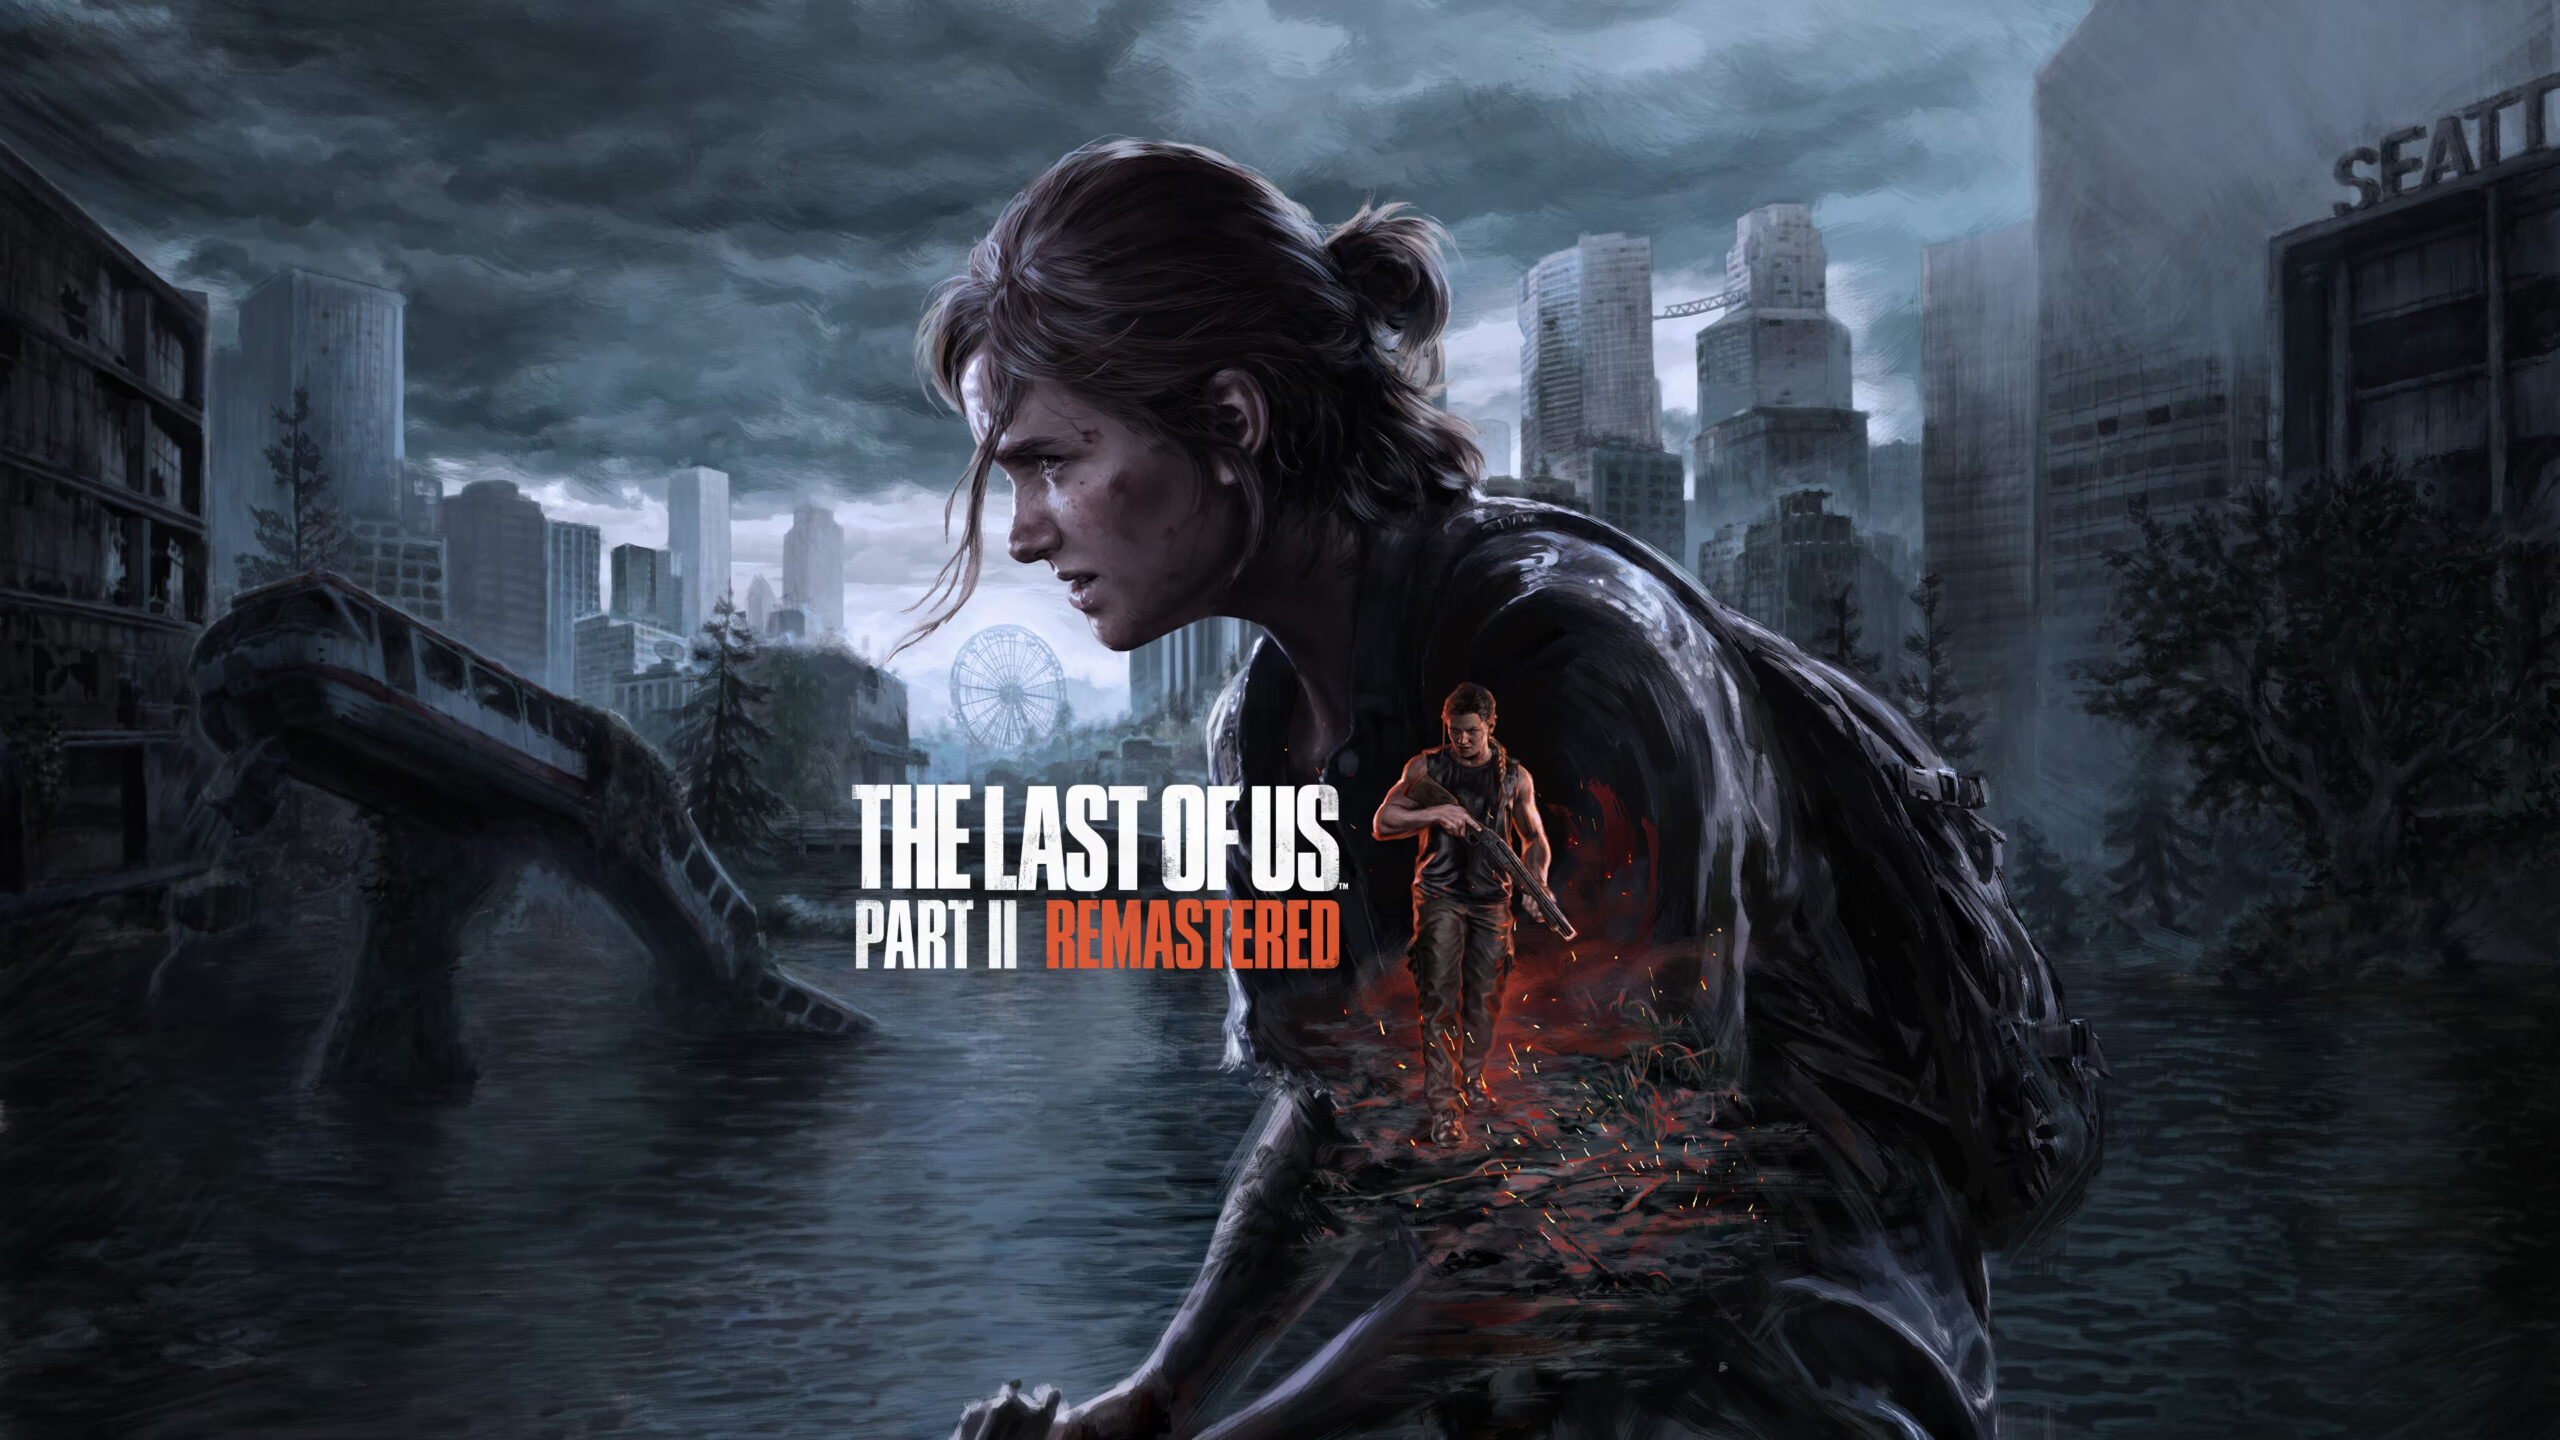 Zdjęcie przedstawia grafikę promującą grę "The Last of Us Part II Remastered", z postacią Ellie na pierwszym planie oraz postacią Joela w tle, w opuszczonej i zalanej miejskiej scenerii z napisem "Seattle".